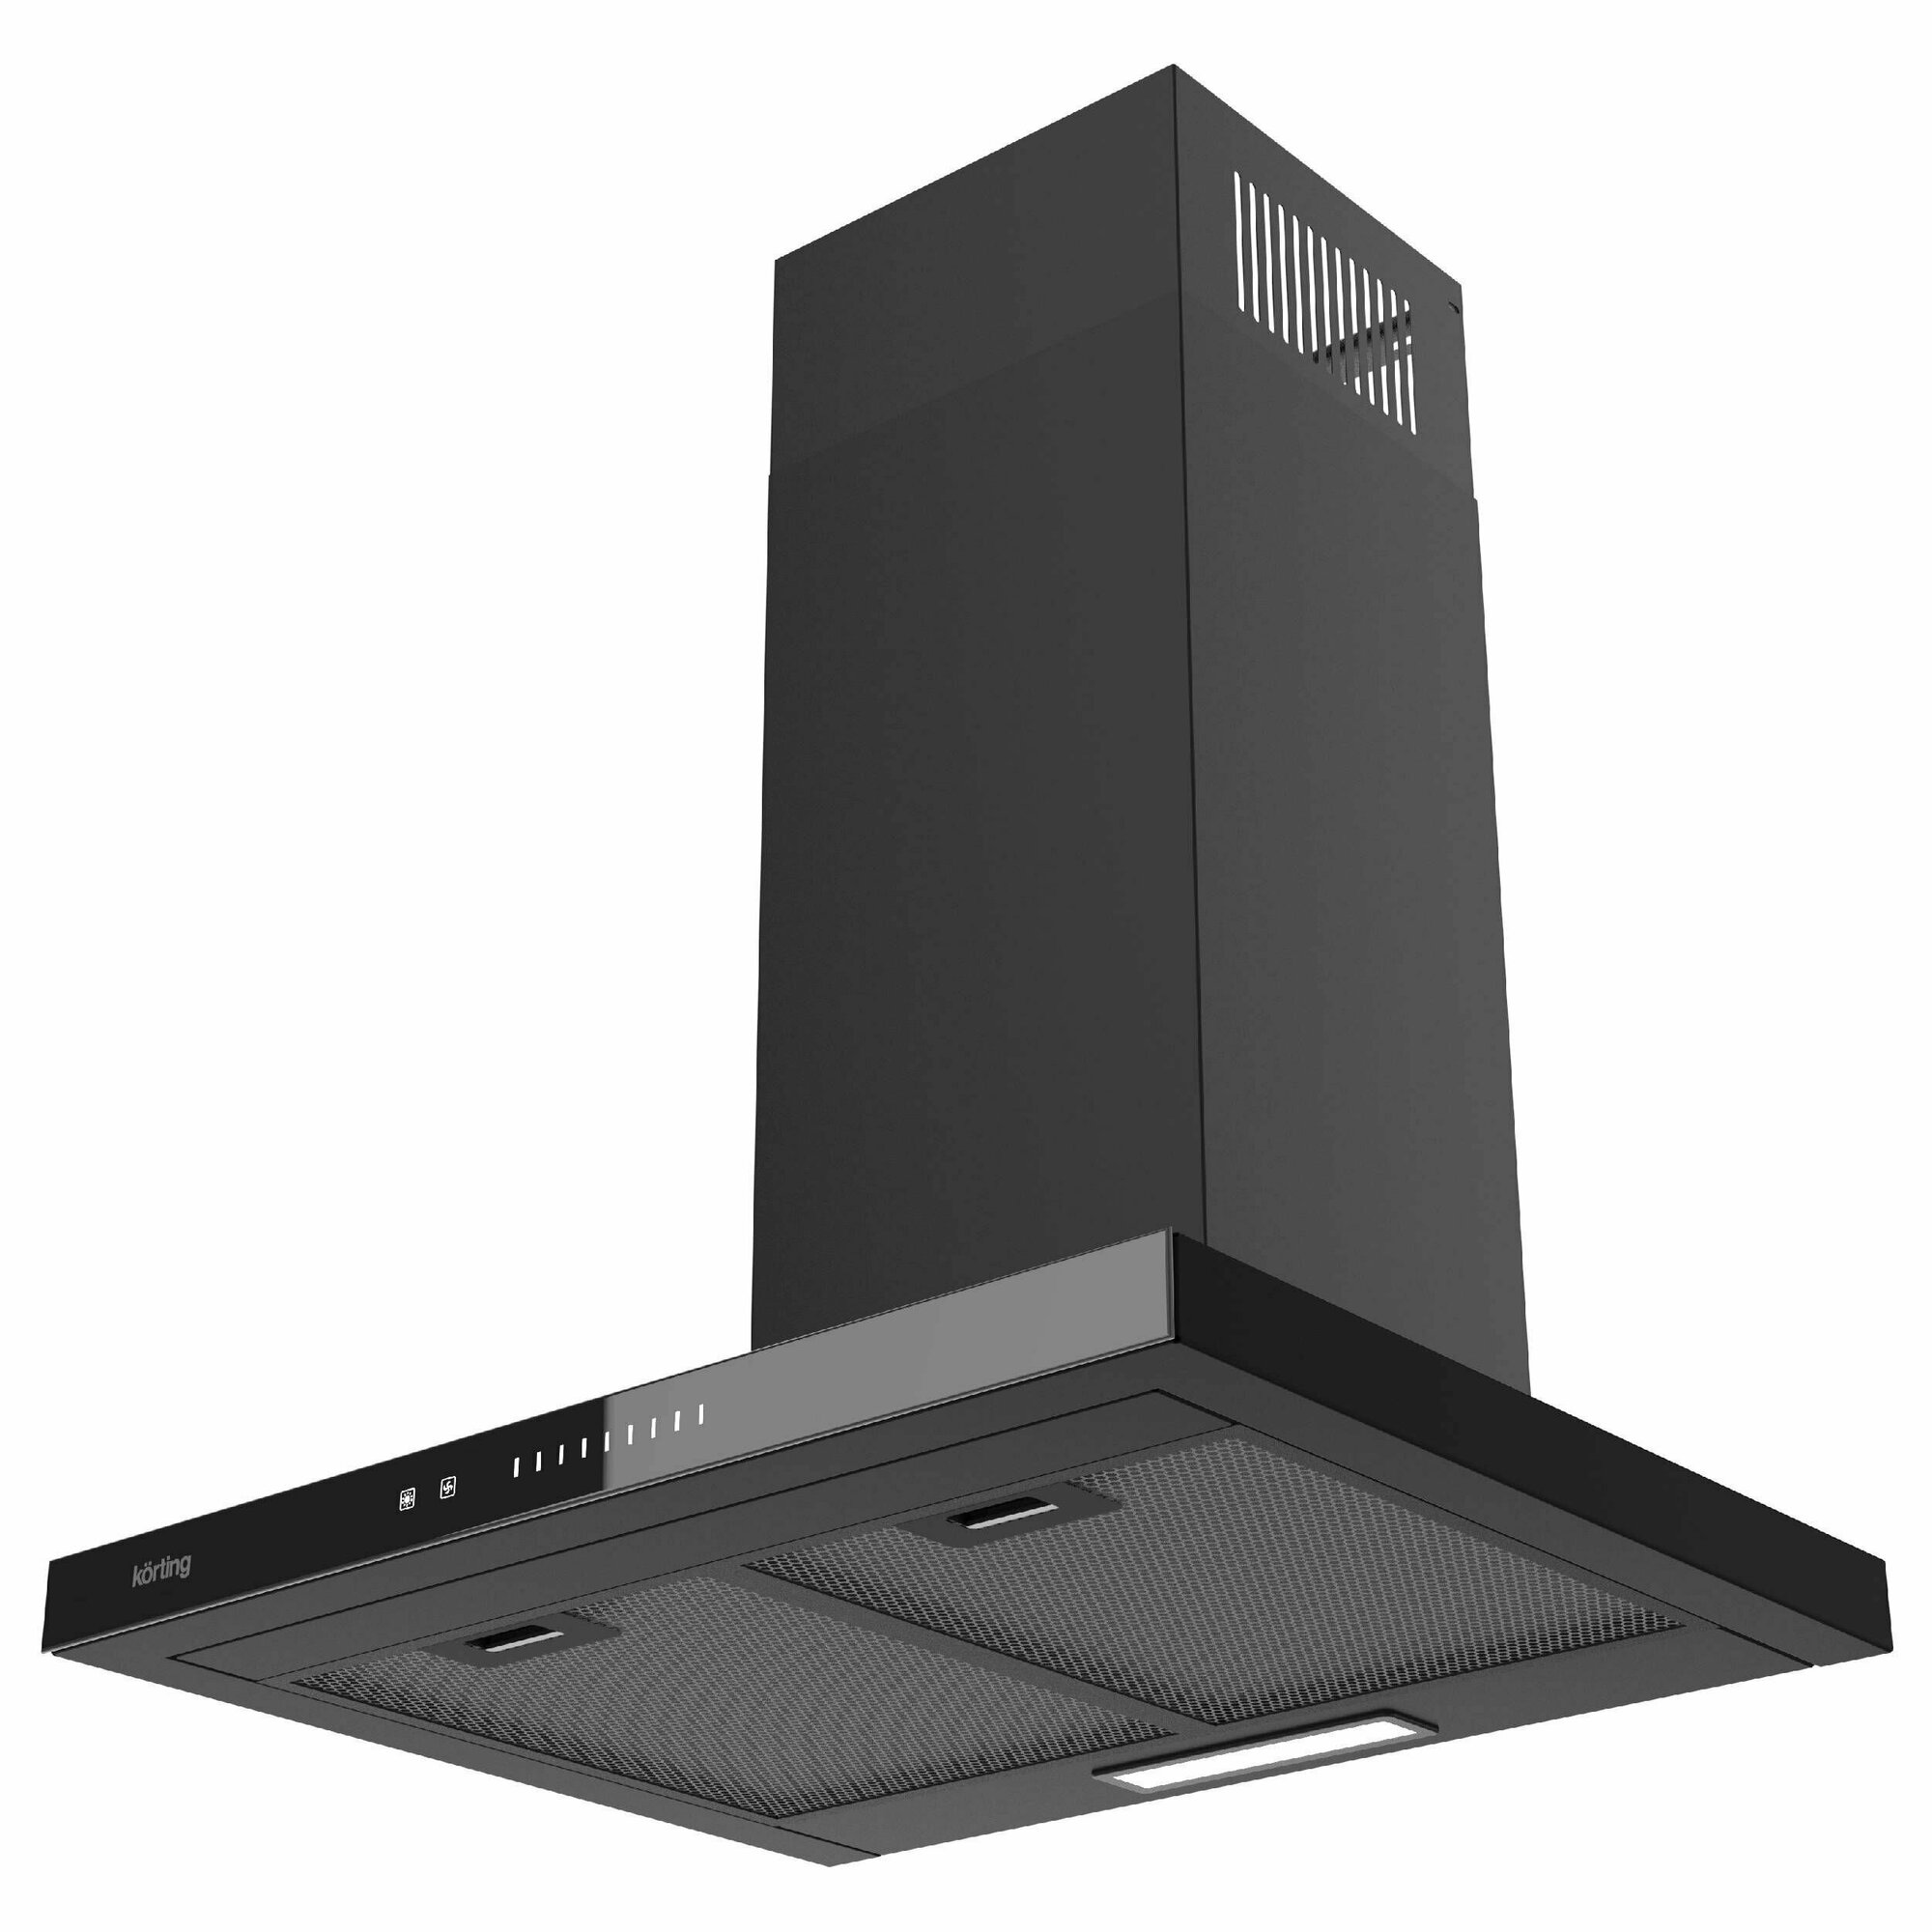 Кухонная вытяжка Korting KHC 6989 GN, Т-образная, сенсорное управление, мощность, 950 куб. м/час, 60 см, черная